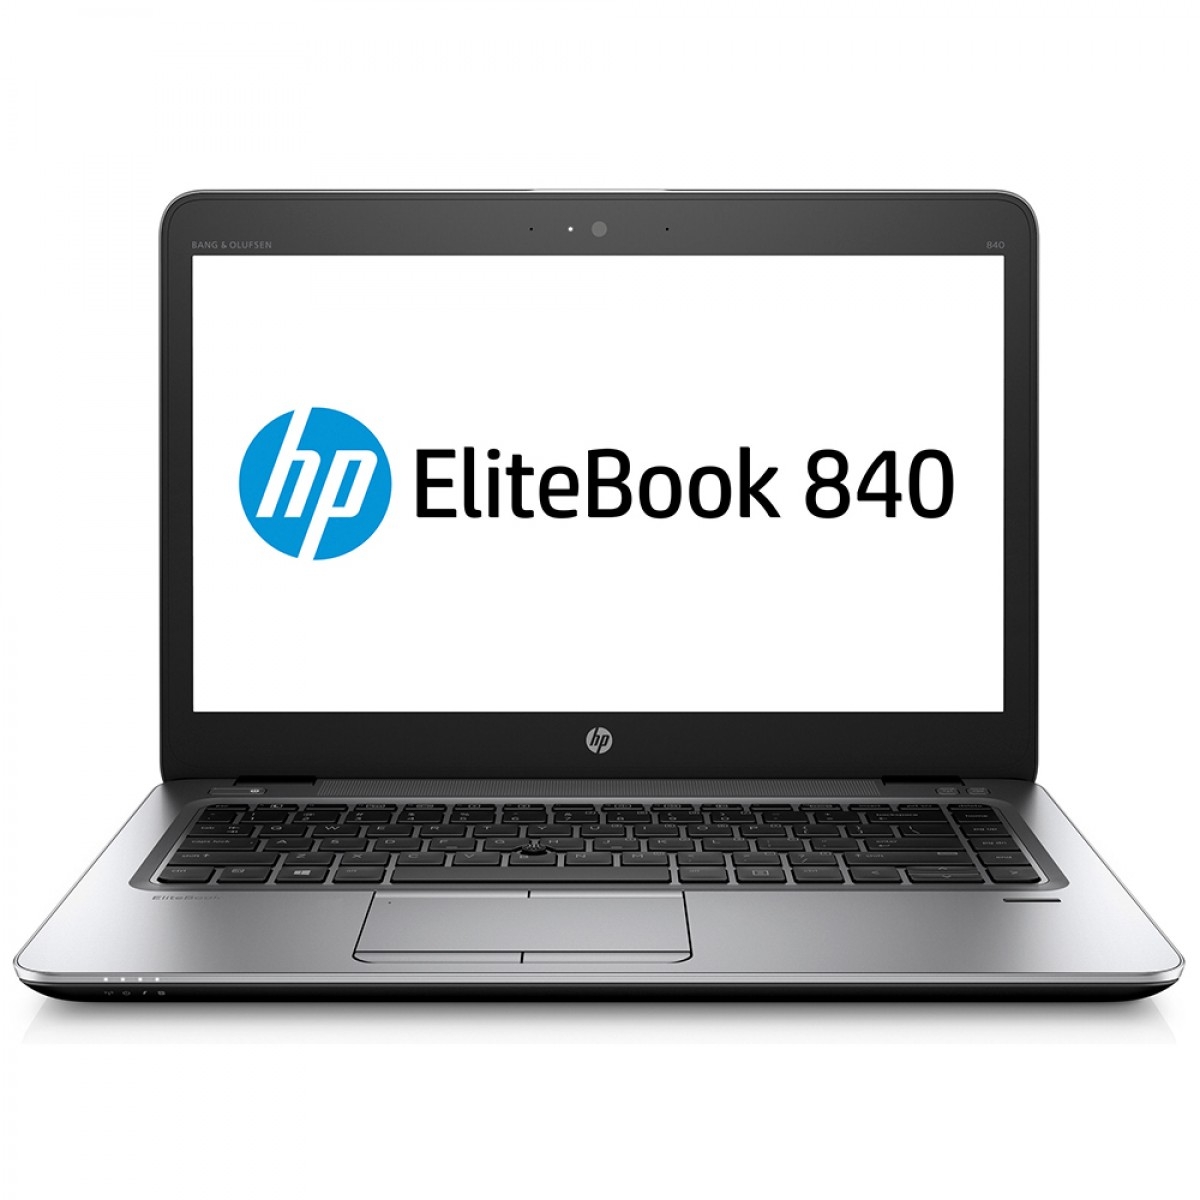 HP ELITEBOOK 840 G5 I5-8250U 256GB 8GB 14 W10P